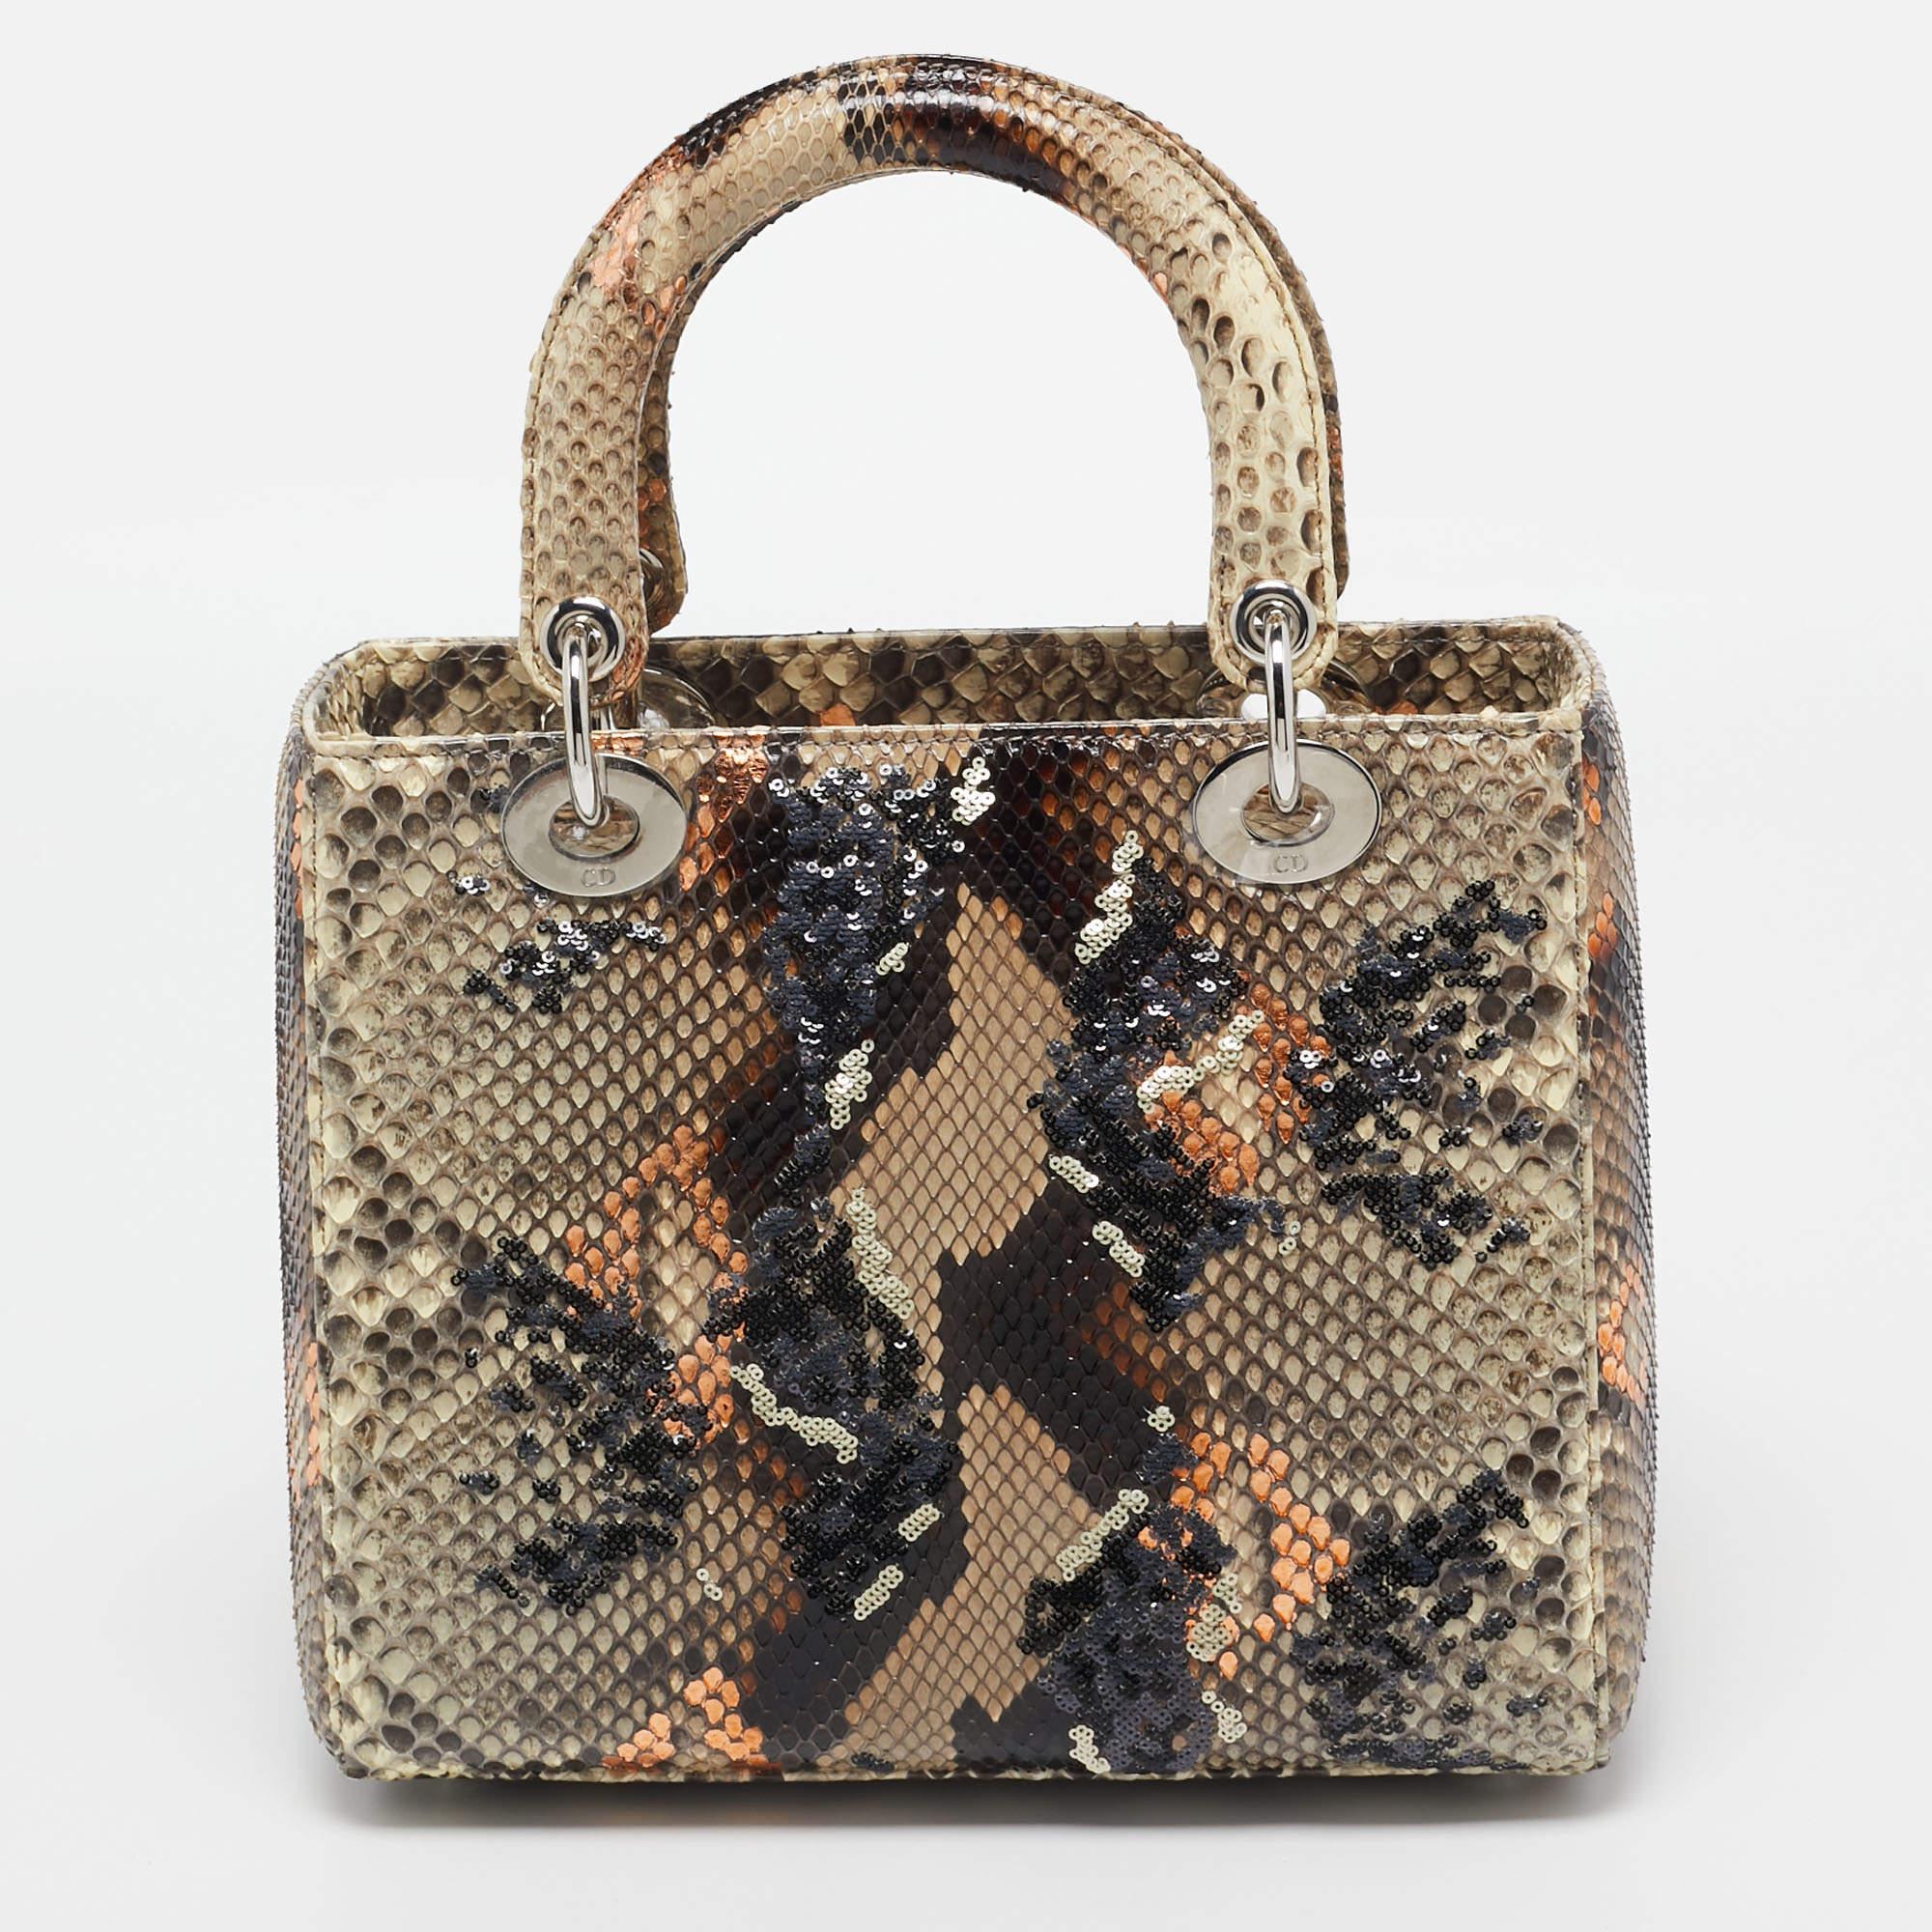 Die Dior Lady Dior Tasche ist eine exquisite Mischung aus Luxus und Kunstfertigkeit. Diese mittelgroße Tasche besteht aus einem raffinierten beigen Grundmaterial, das mit mehrfarbigem Pythonleder und aufwendigen Paillettenverzierungen verziert ist